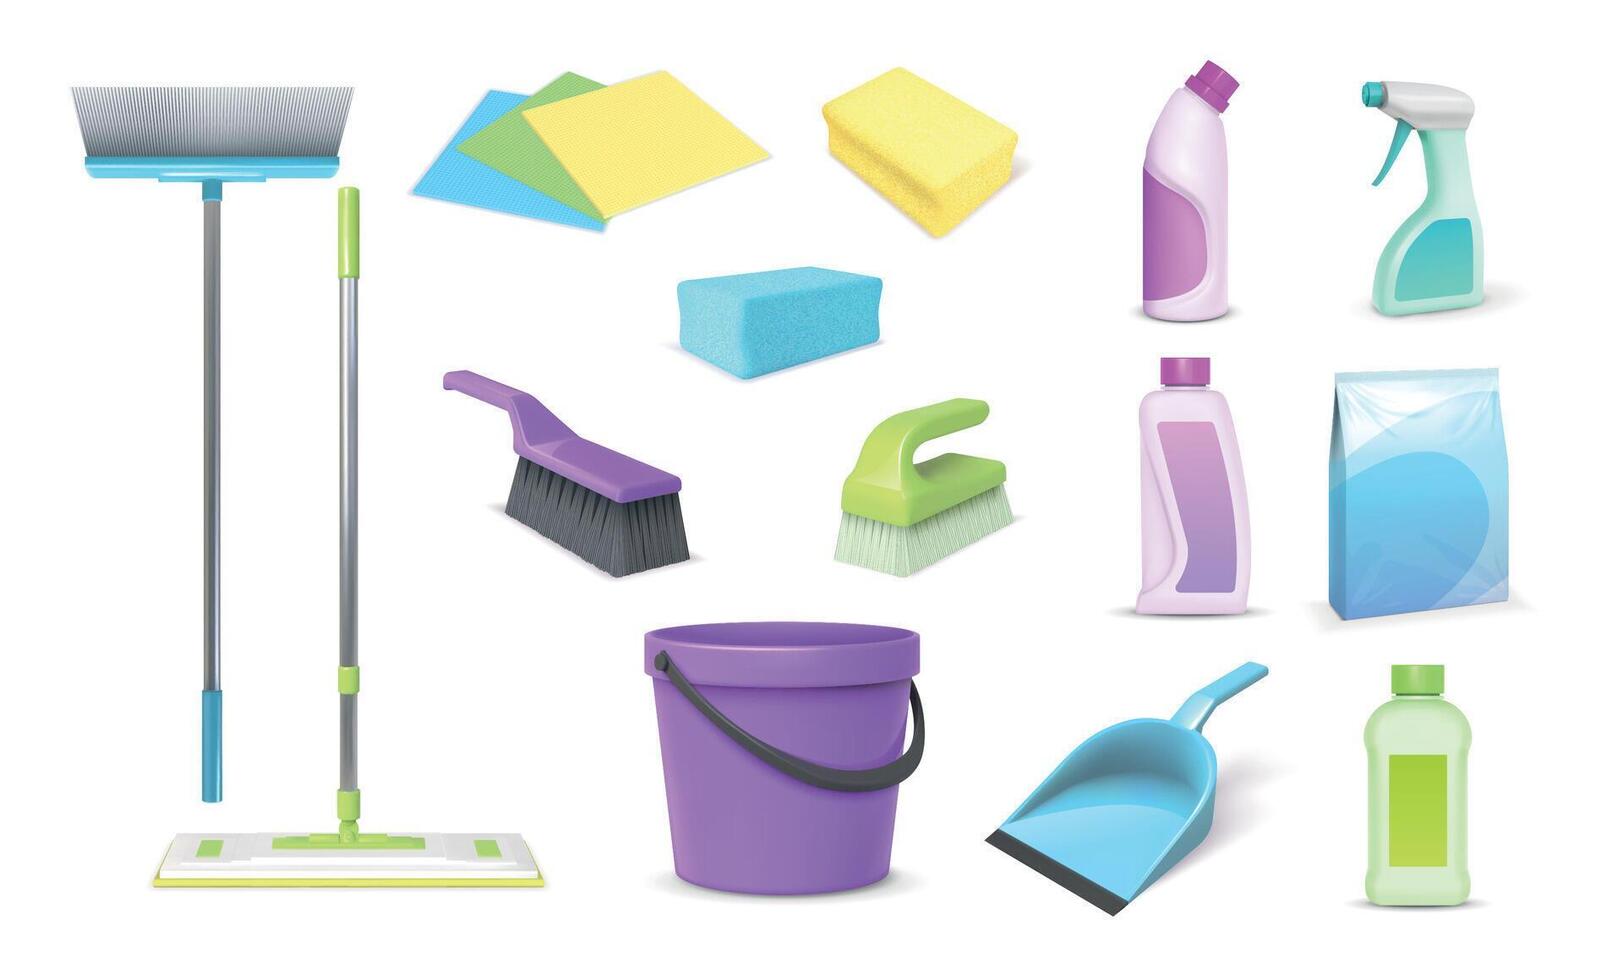 réaliste 3d Accueil nettoyage outils, balais, balai et seau. Ménage nettoyer et plat la lessive chimique des produits, chiffons et éponges vecteur ensemble